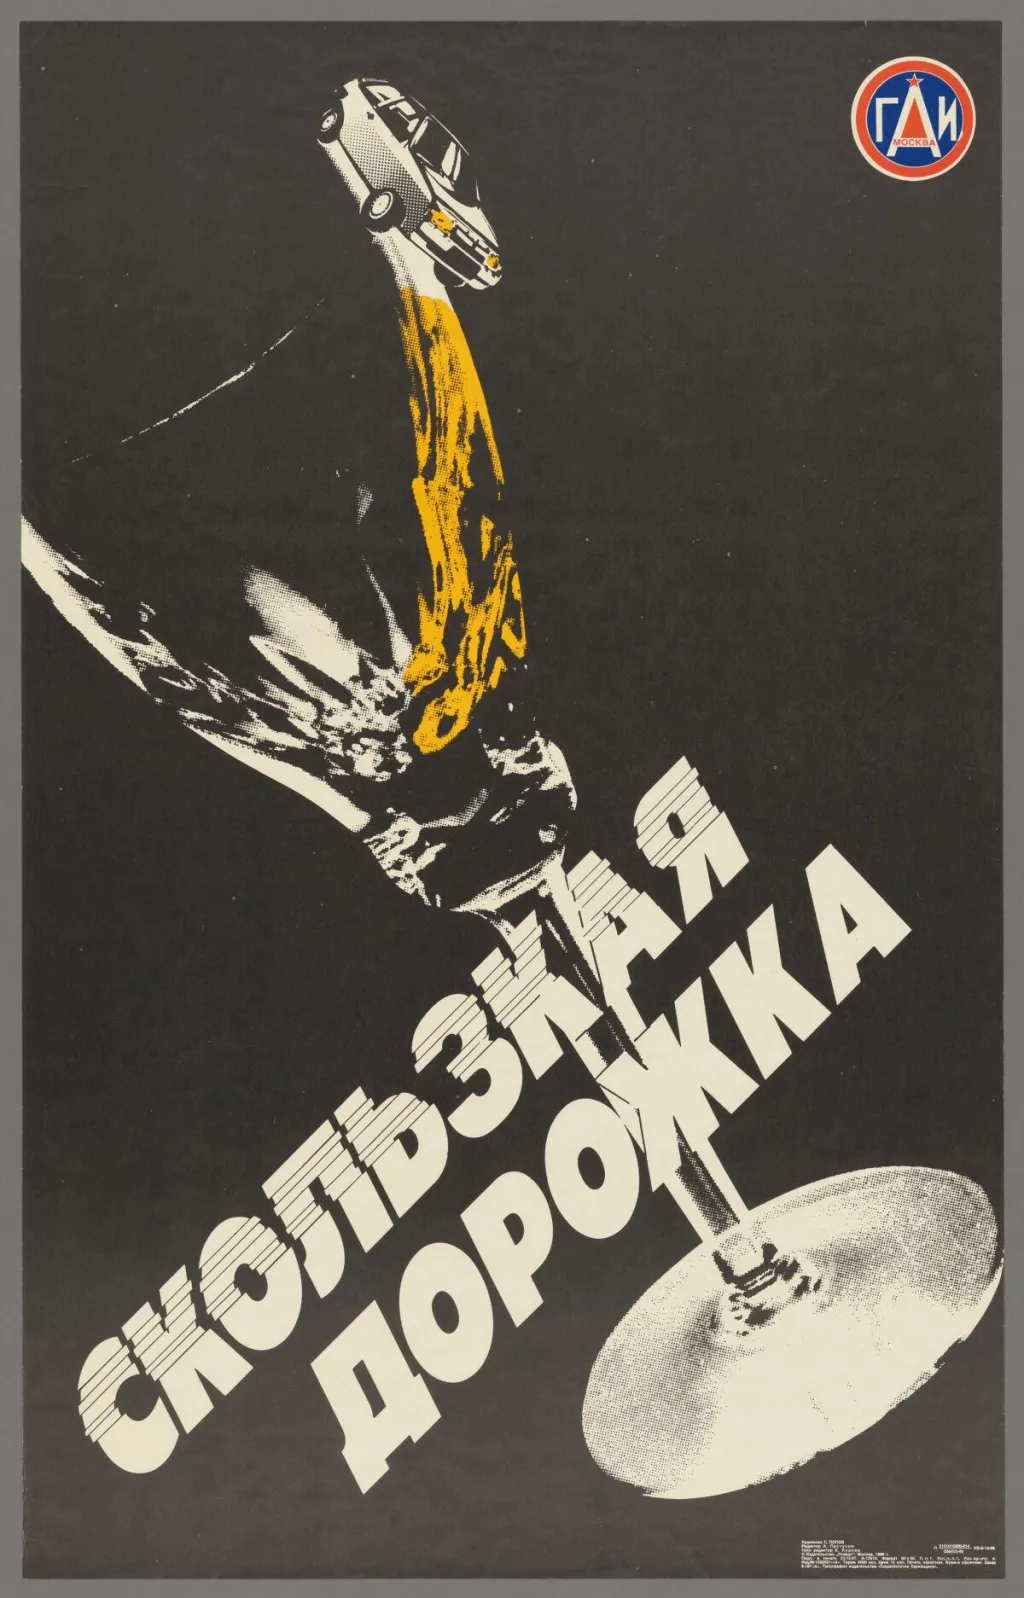 "Na šikmém svahu" je ukázka sovětské propagandy z doby přestavby. Michail Gorbačov se tehdy snažil roku 1985 snížit alkoholismus, který byl (nejen) tehdy rozšířený. Tento plakát upozorňoval na rizika řízení za volantem